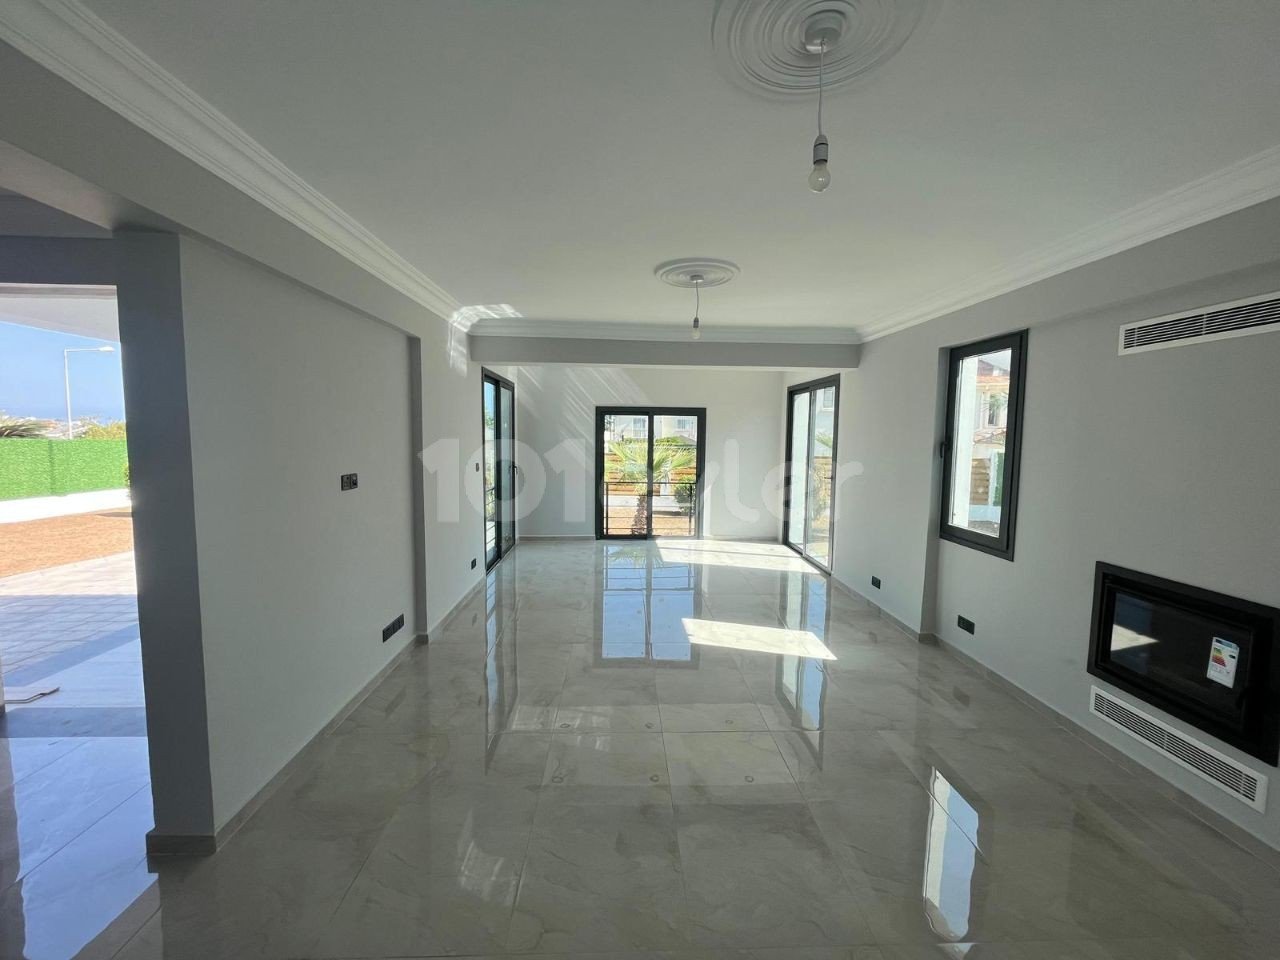 Satılık Villa - Bellapais, Girne, Kuzey Kıbrıs-9a690e76-8c43-485a-8d3a-a92b433cfef9